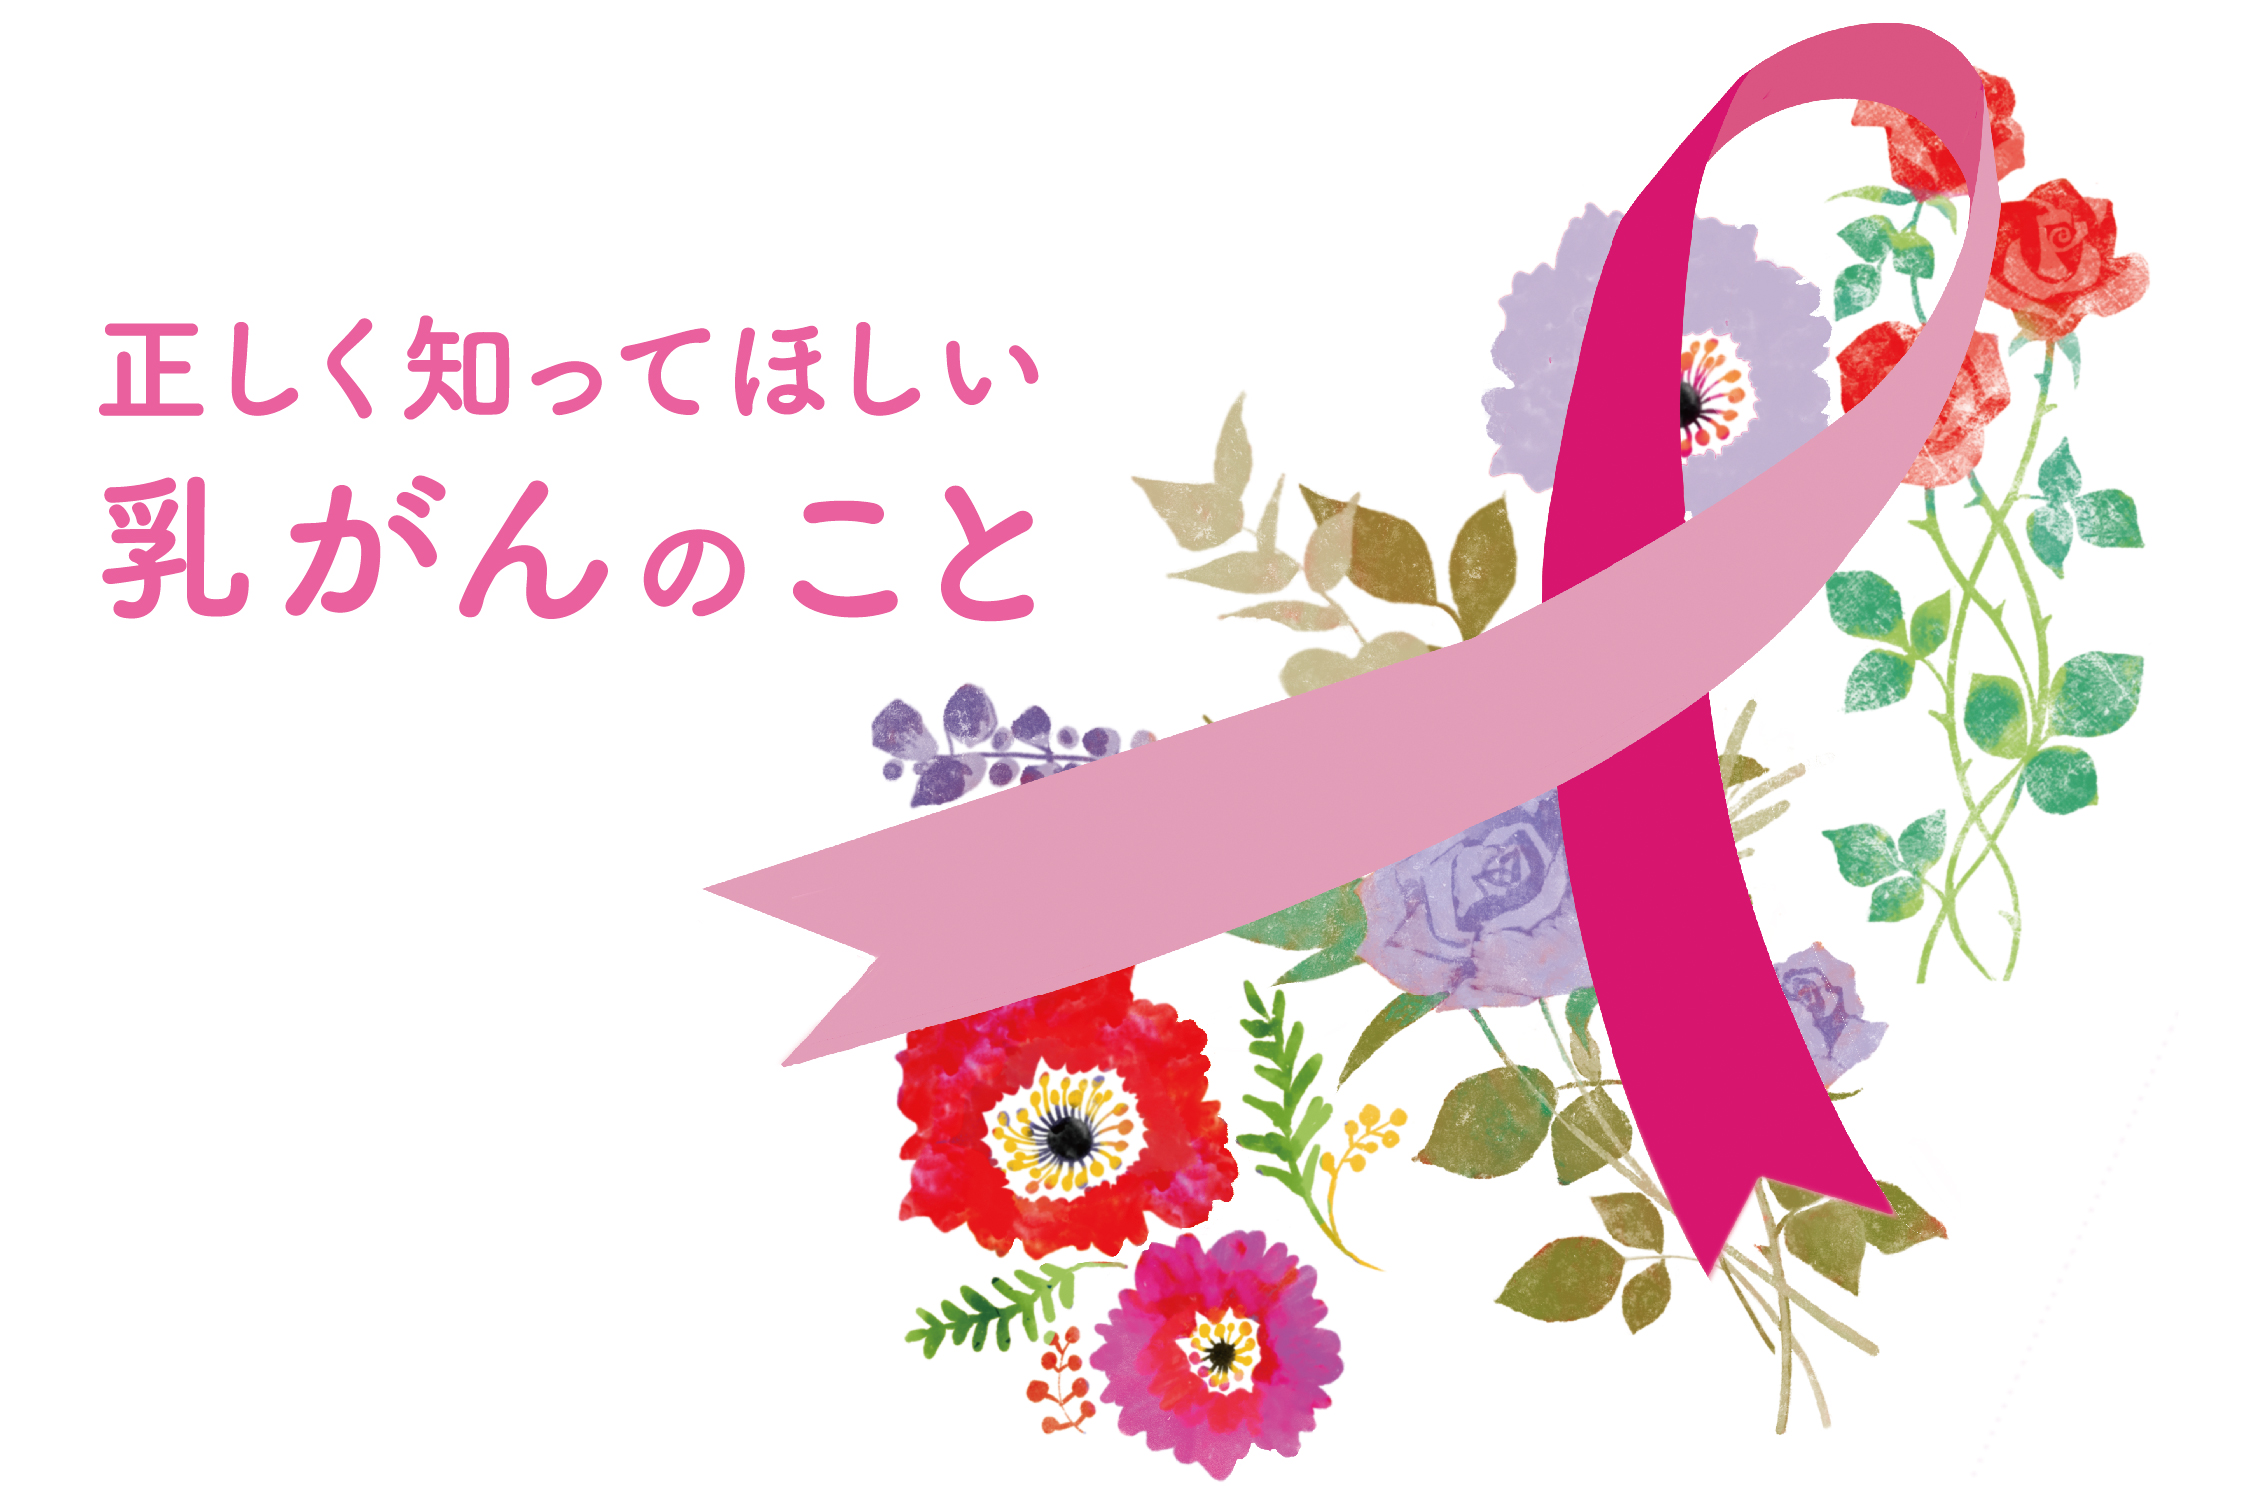 正しく知ってほしい乳がんのこと 地域情報紙 湘南ジャーナルのウェブサイト